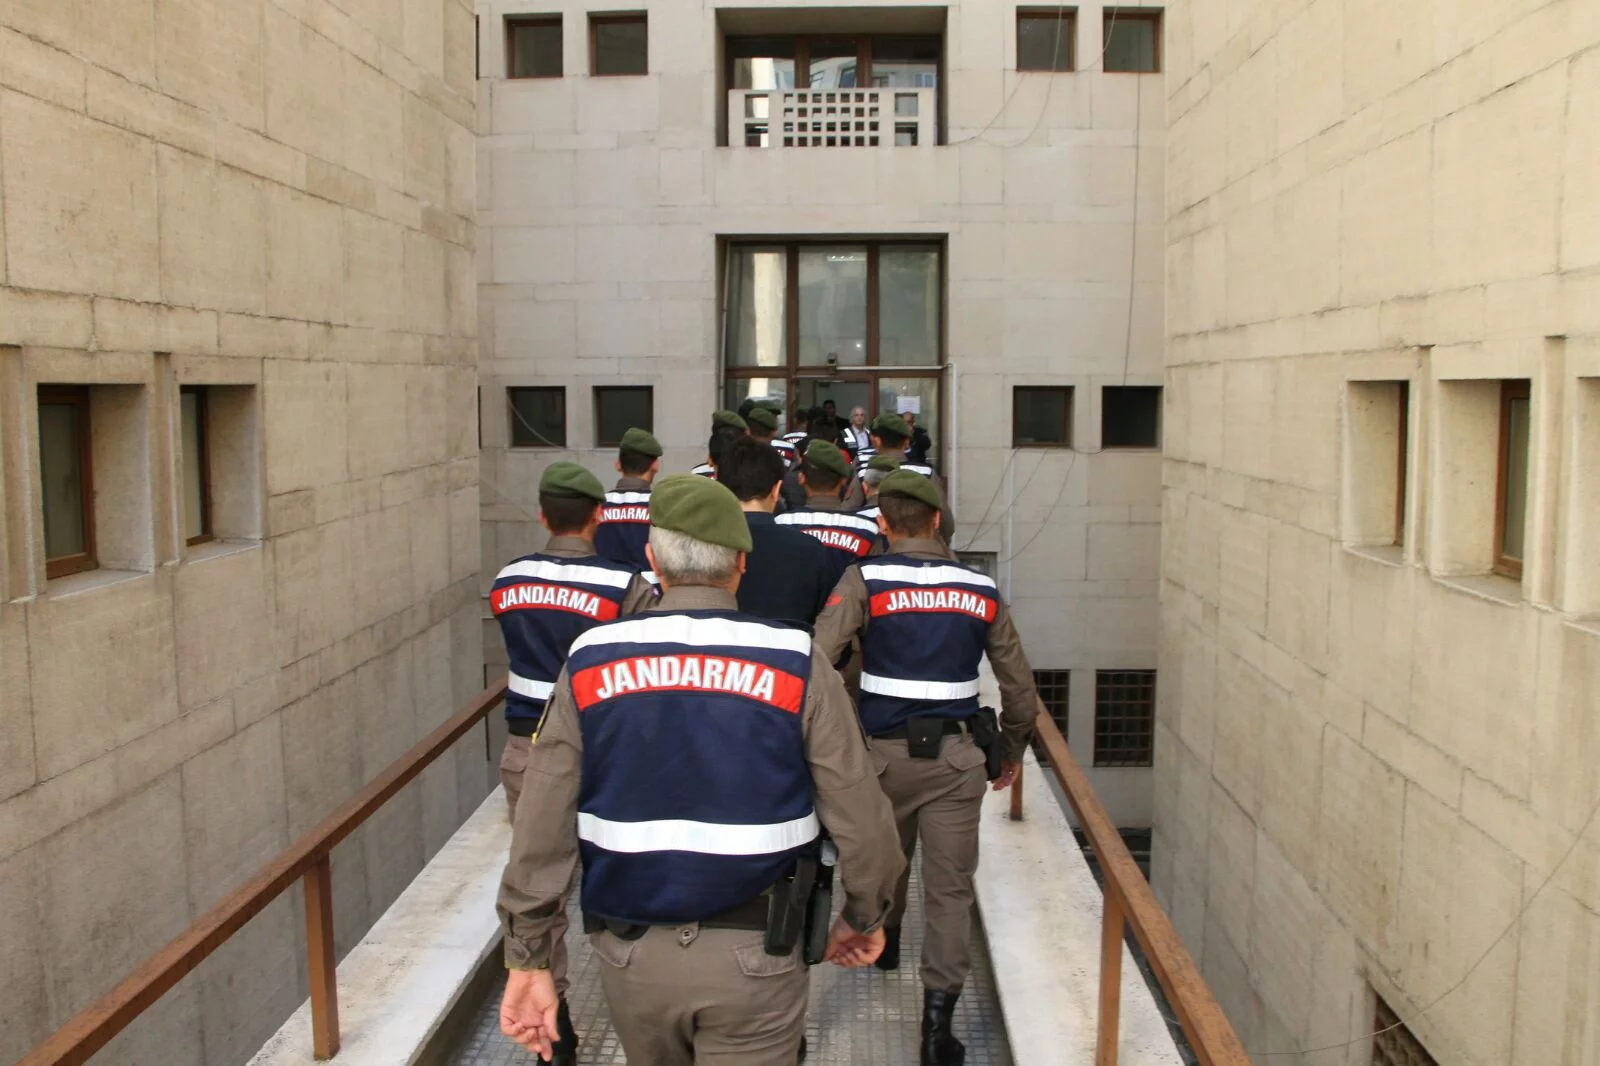 Bursa merkezli FETÖ operasyonu 6 gözaltı